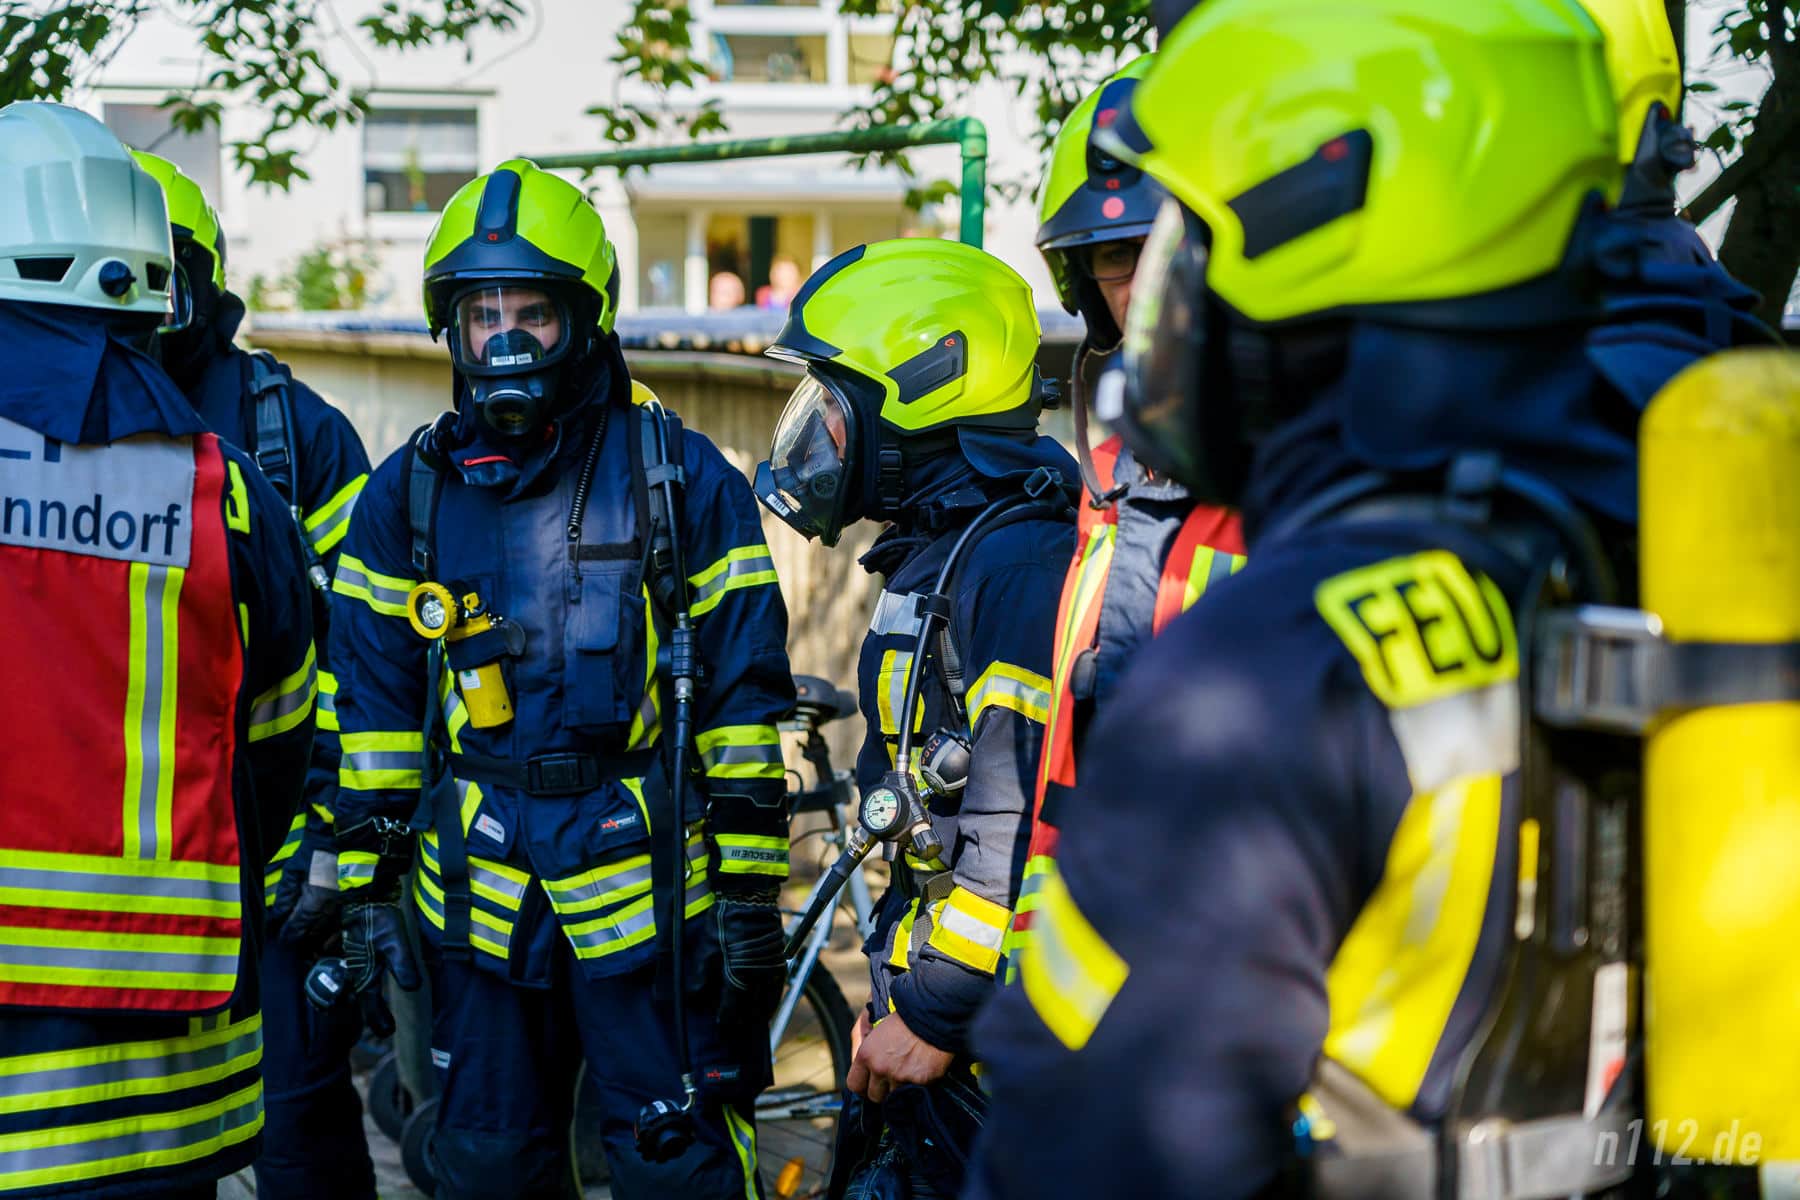 Atemschutzträger warten auf ihren Einsatz. Erst dann wird das Mundstück mit der Luftzufuhr auf die Maske gesteckt (Foto: n112.de/Stefan Hillen)